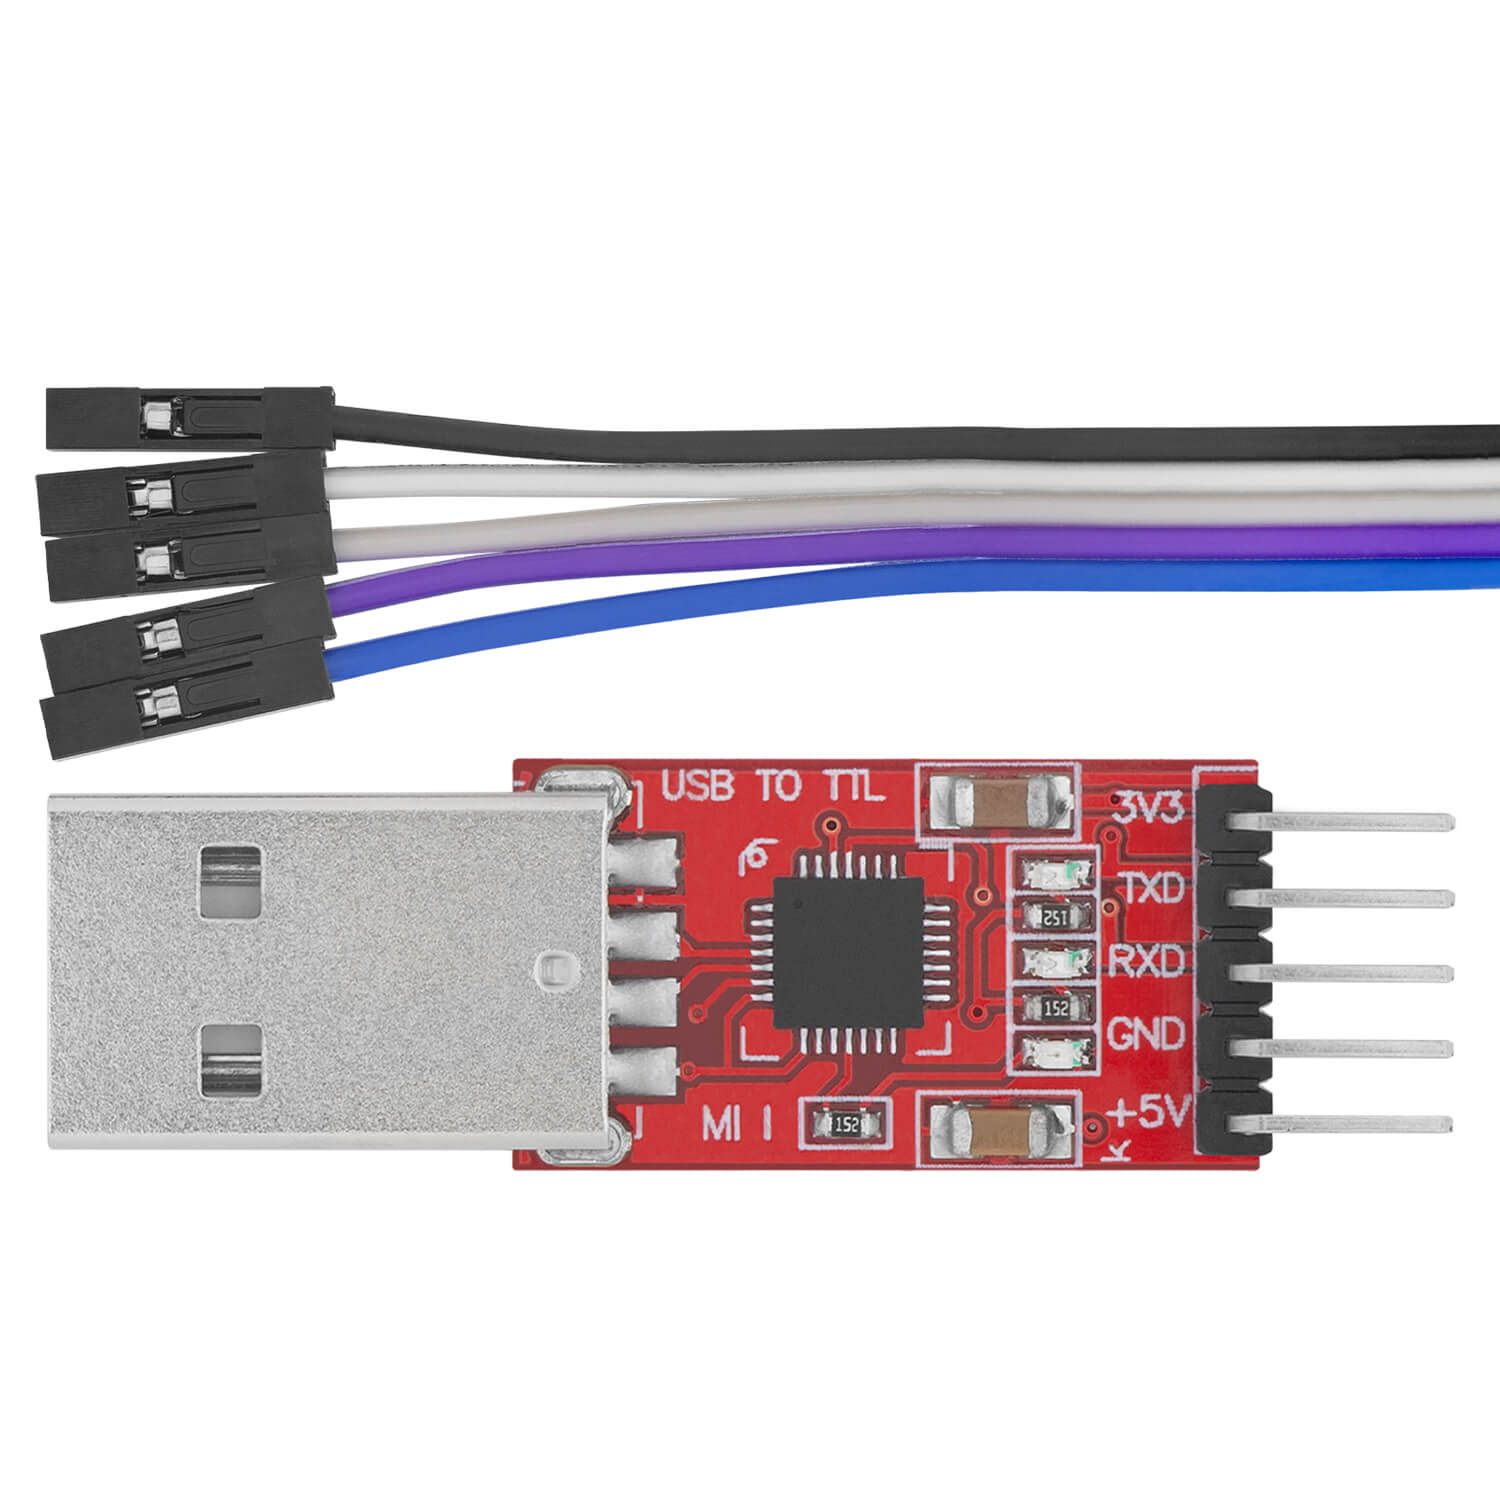 CP2102 USB zu TTL Konverter HW-598 für 3,3V und 5V mit Jumper Kabel - AZ-Delivery